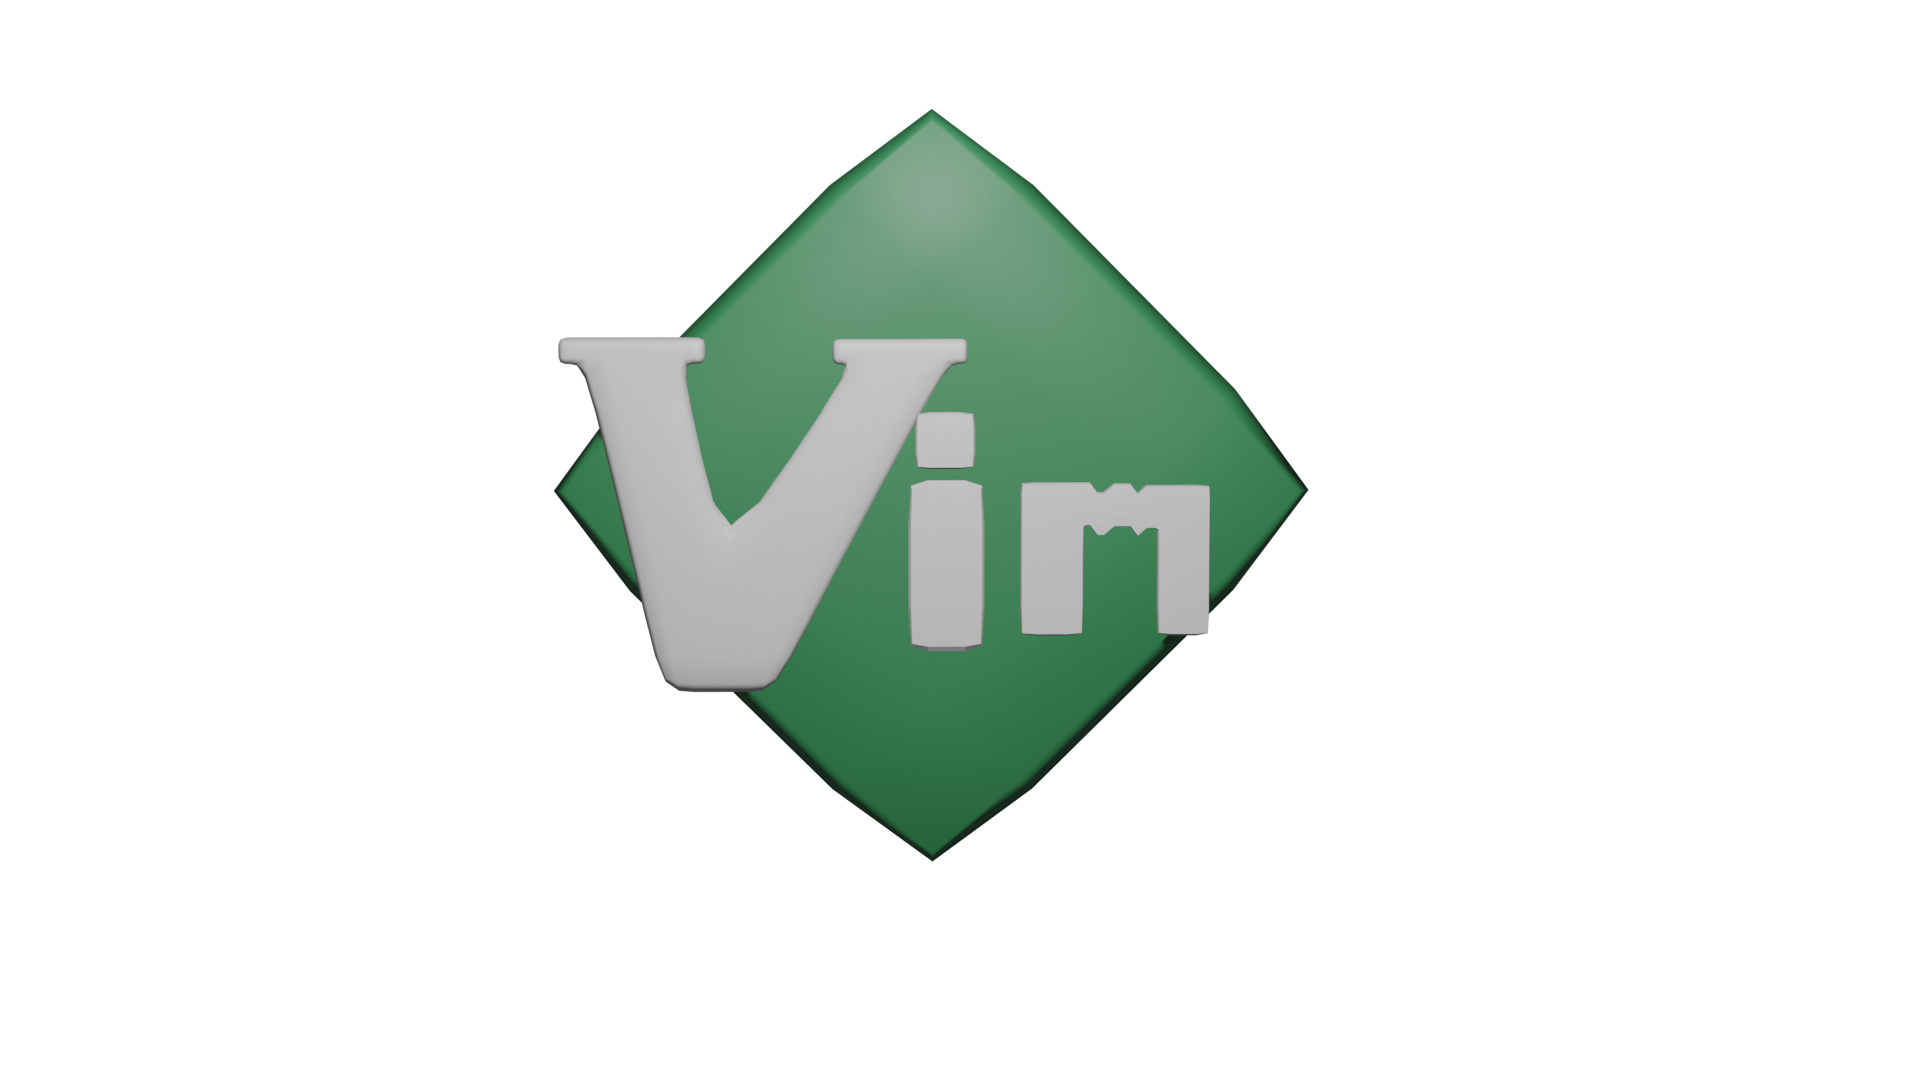 ./images/vim_logo.png